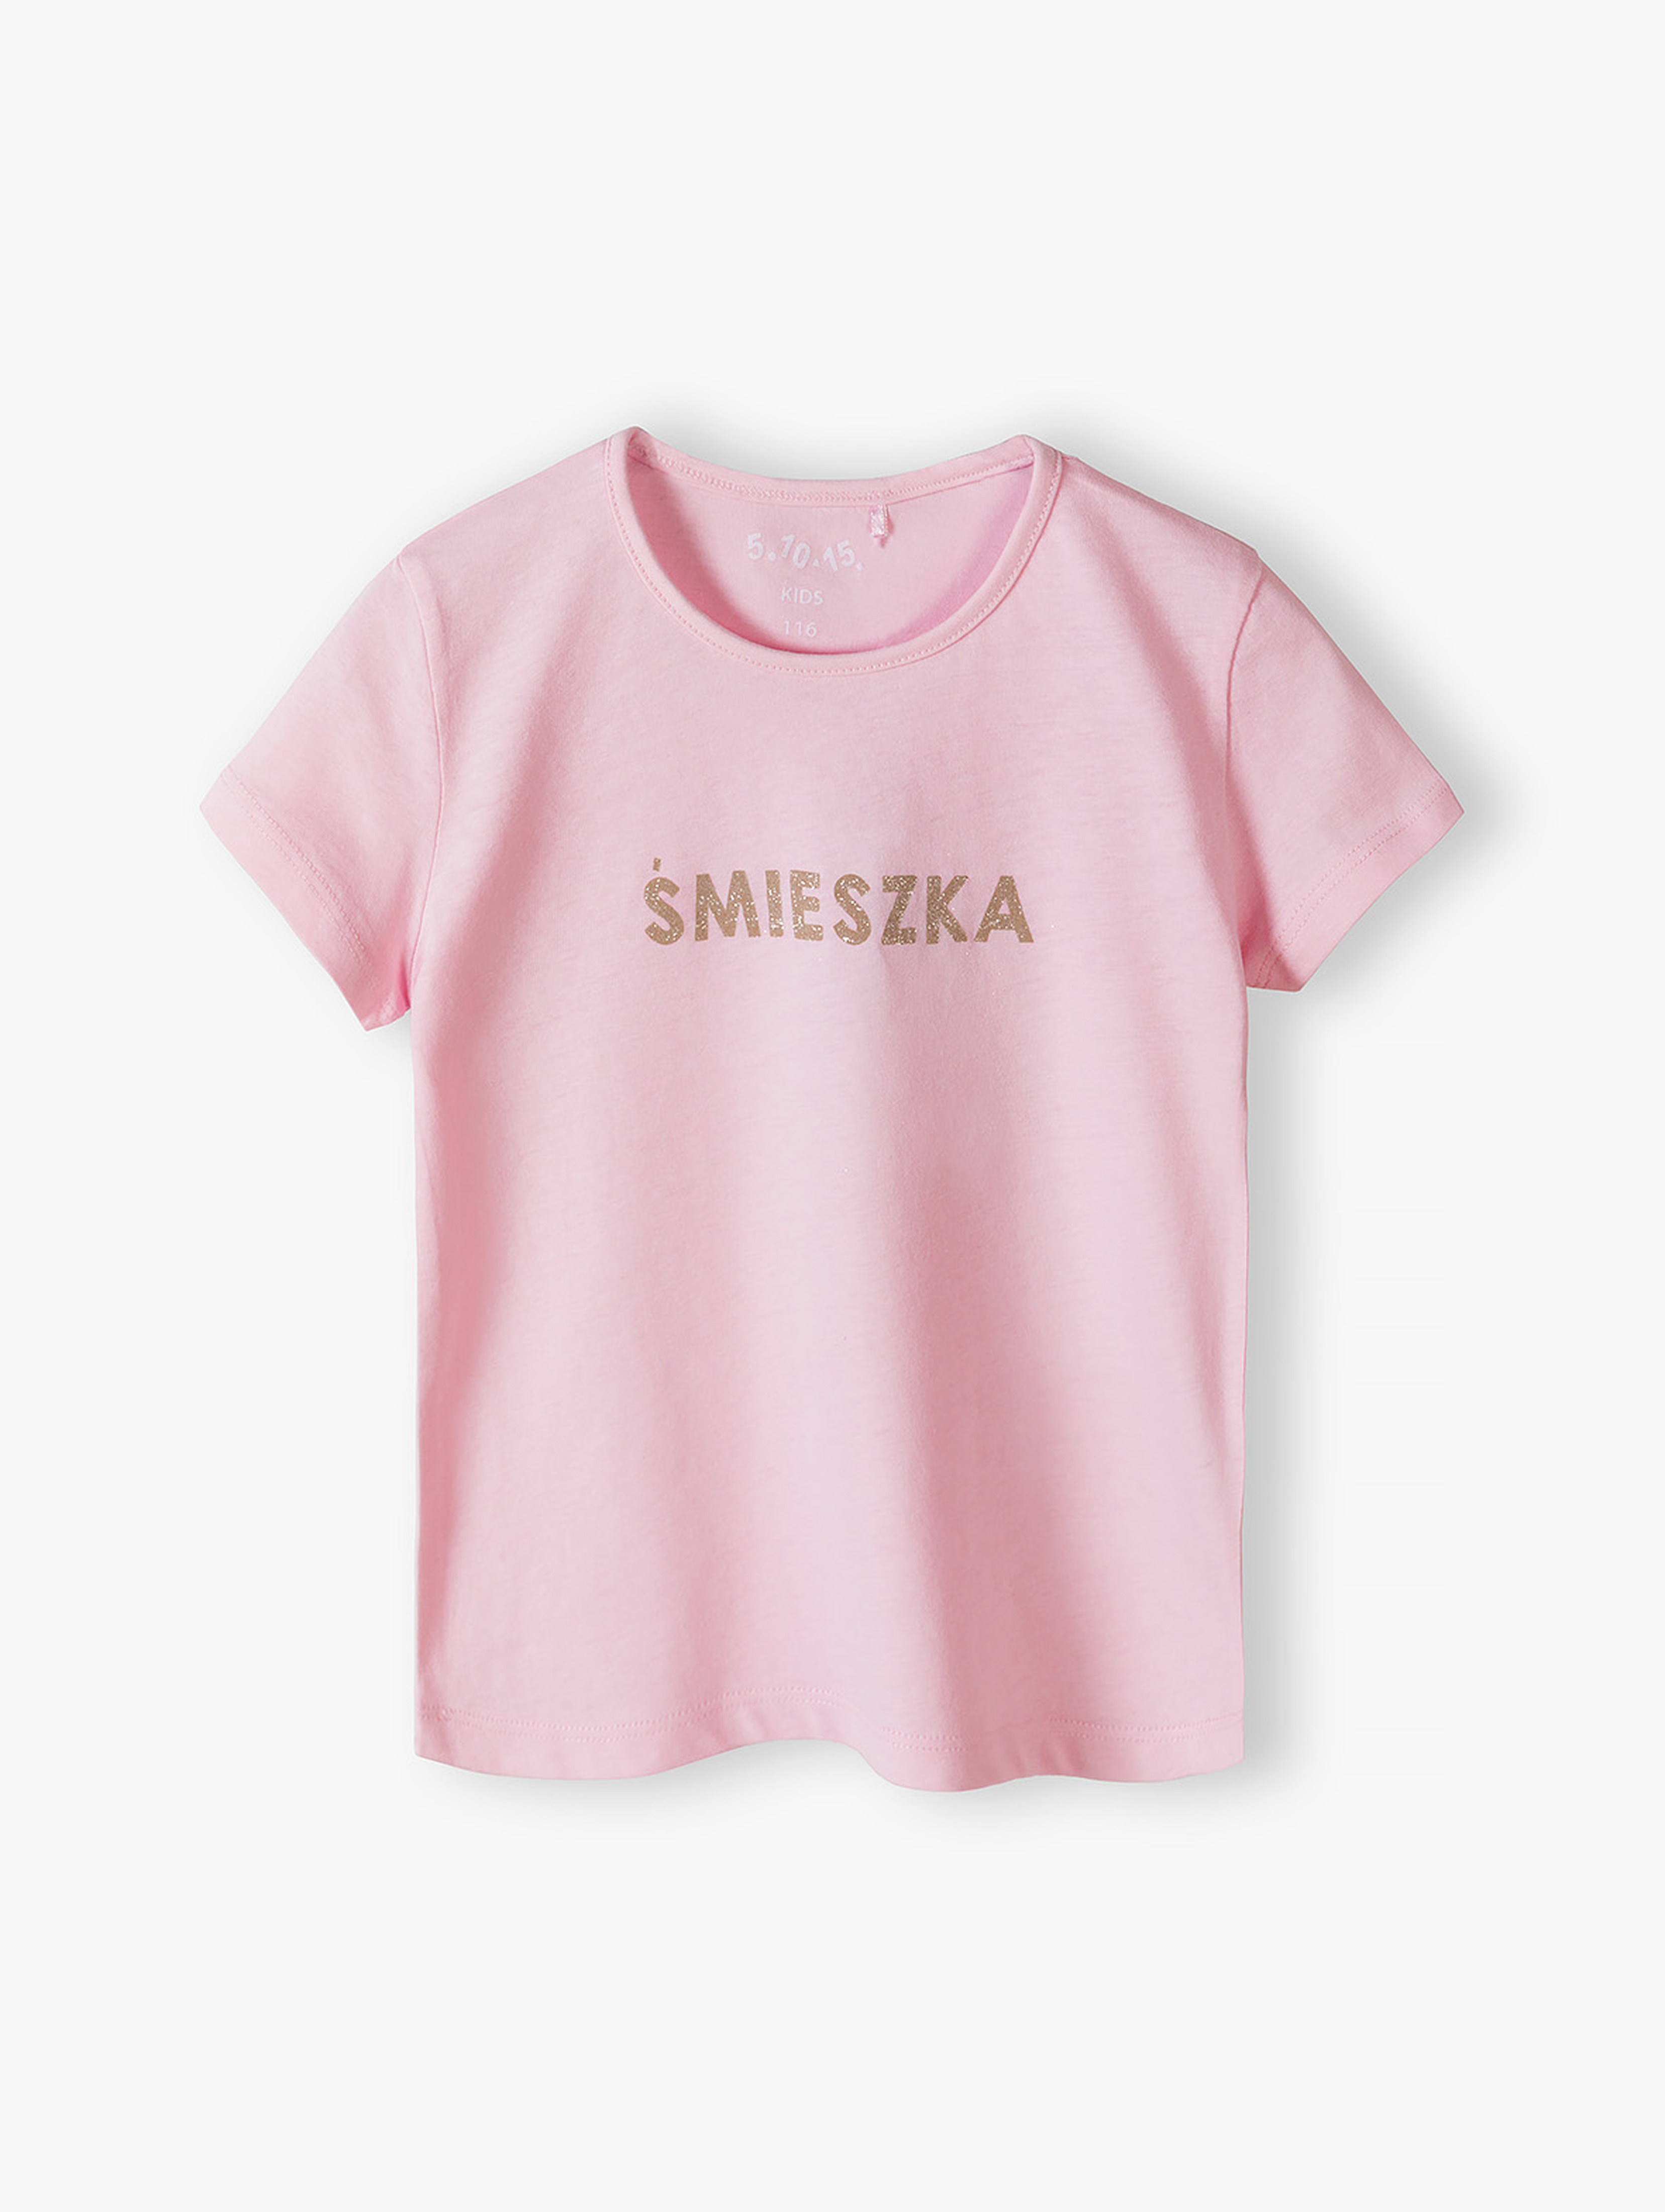 Różowy t-shirt dziewczęcy z brokatowym napisem - Śmieszka - 5.10.15.